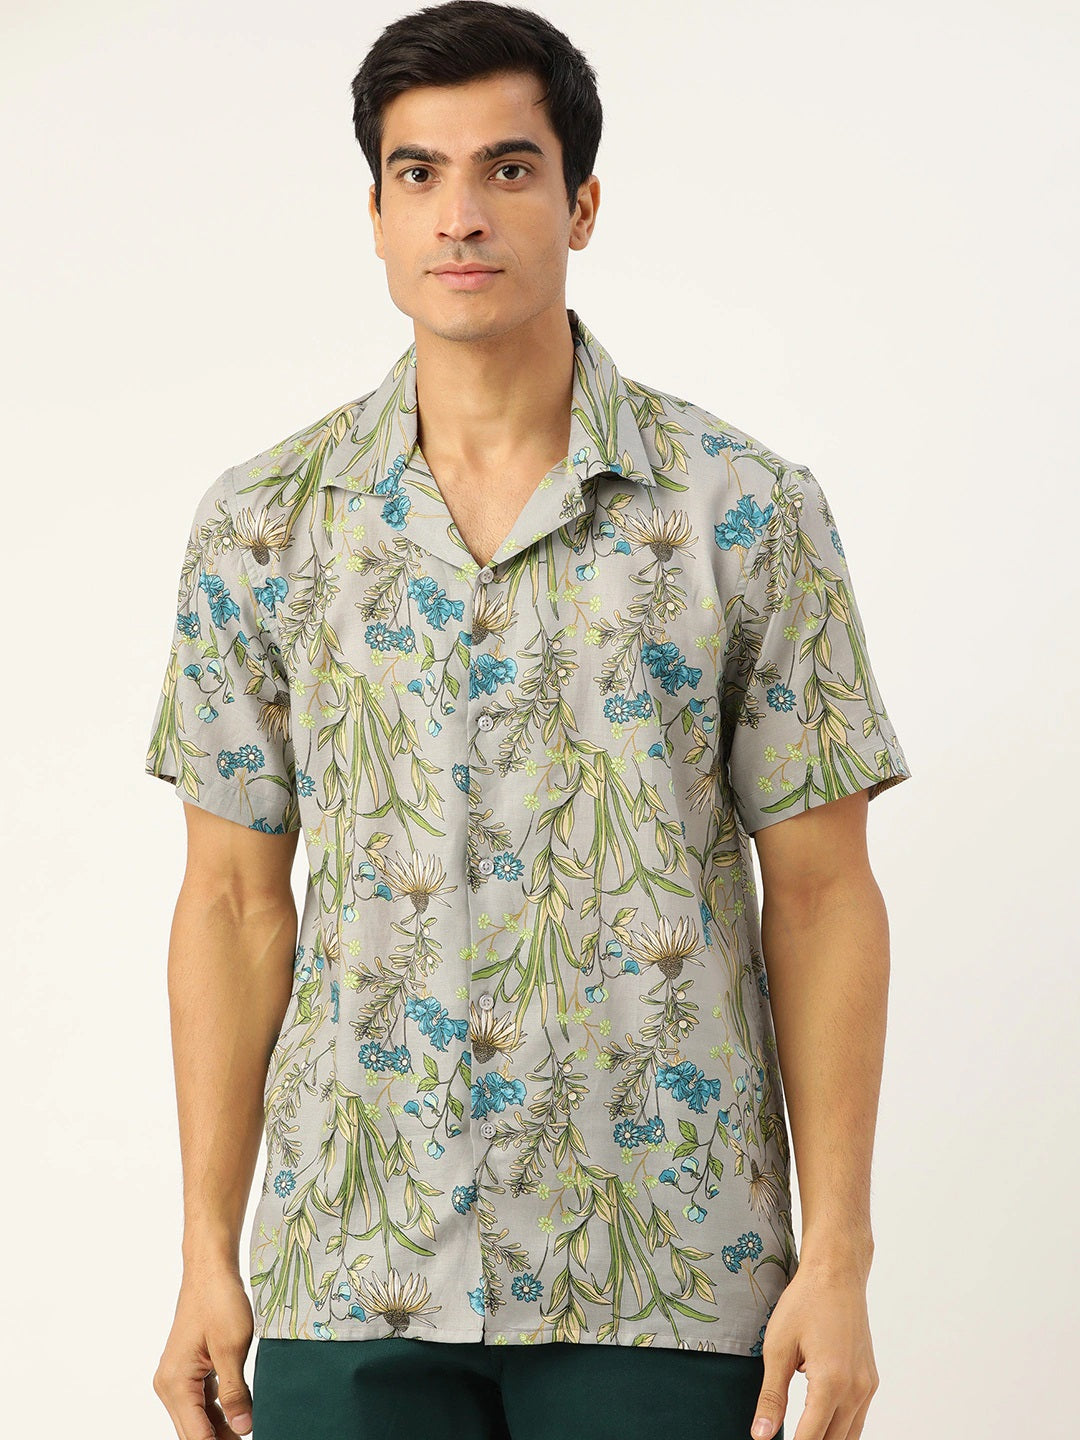 Men Grey Printed Viscose Rayon Relaxed Fit Casual Resort Shirt